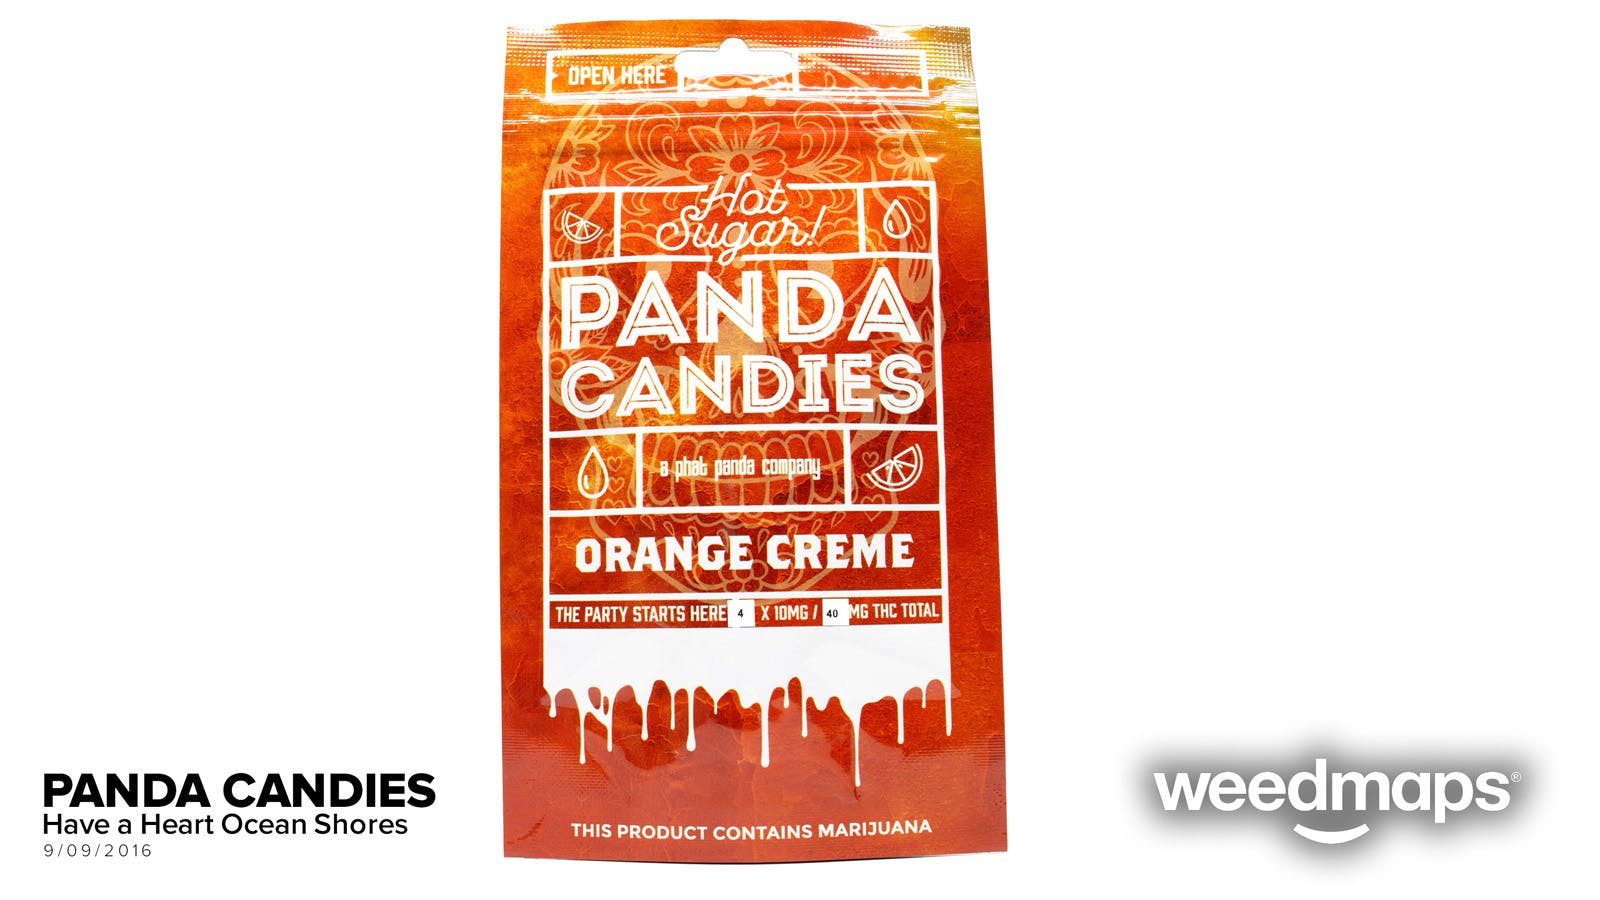 edible-orange-creme-panda-candies